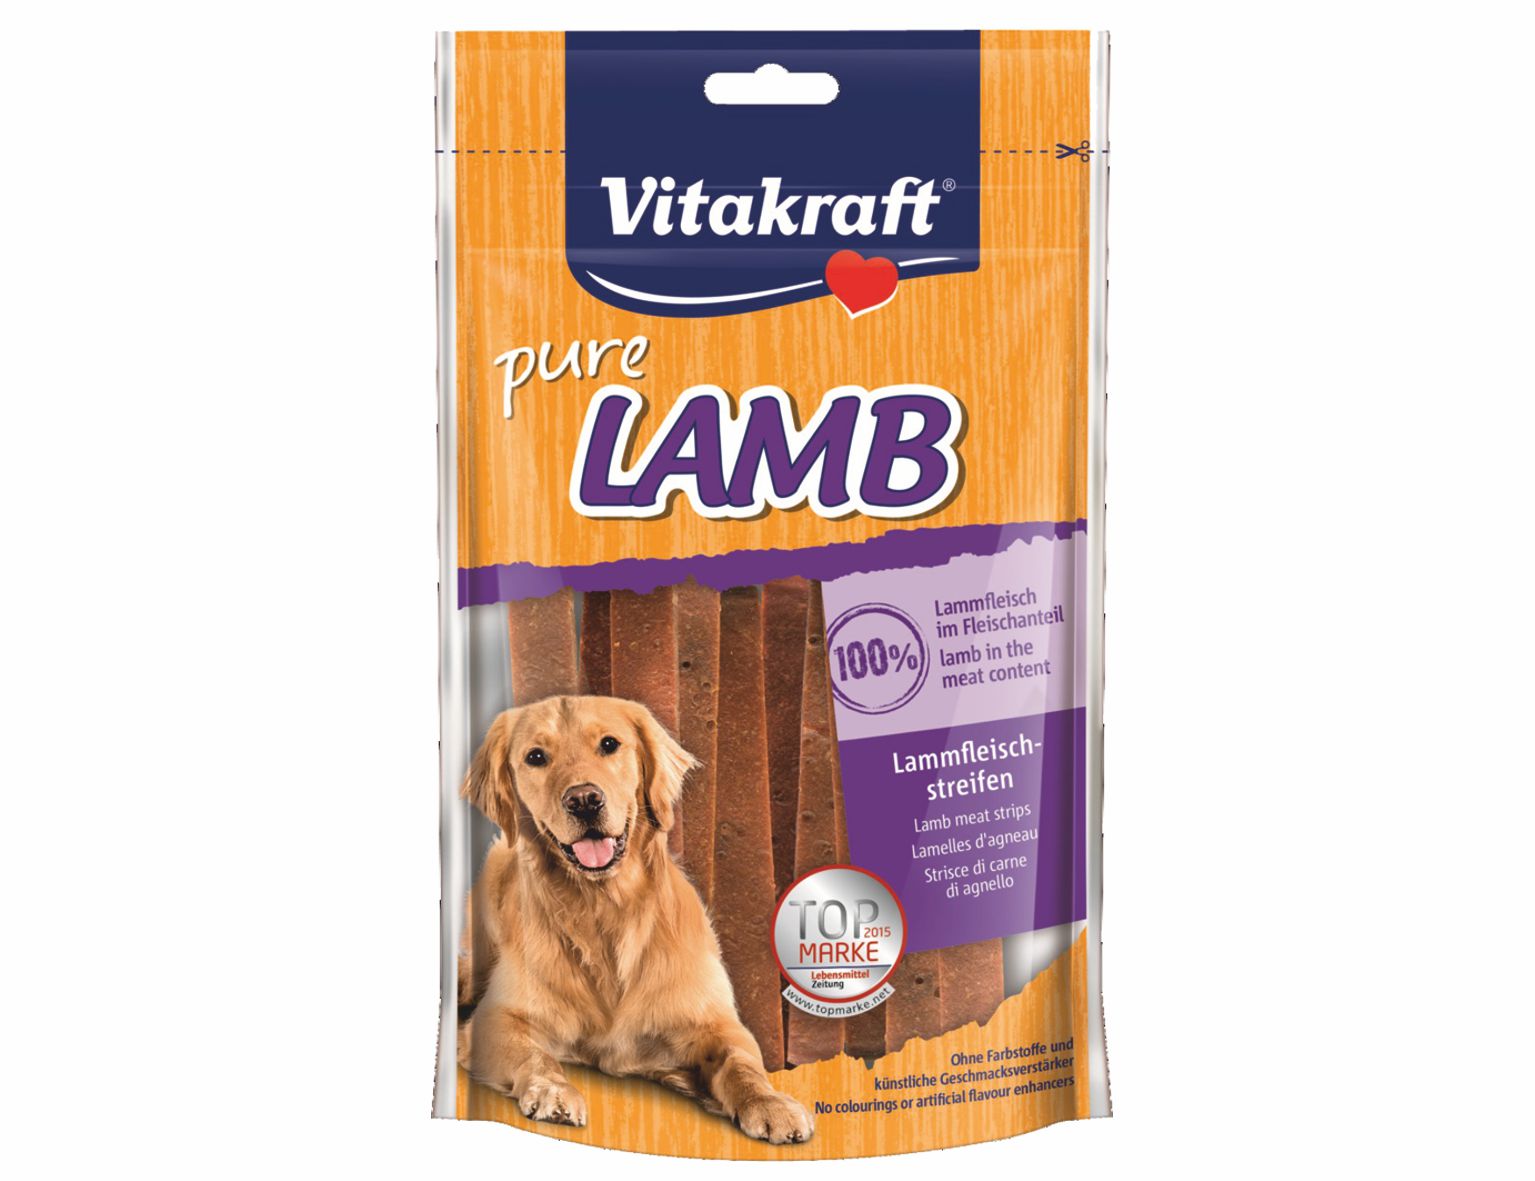 VITAKRAFT-LAMB pre psov jahňacie plátky 80g